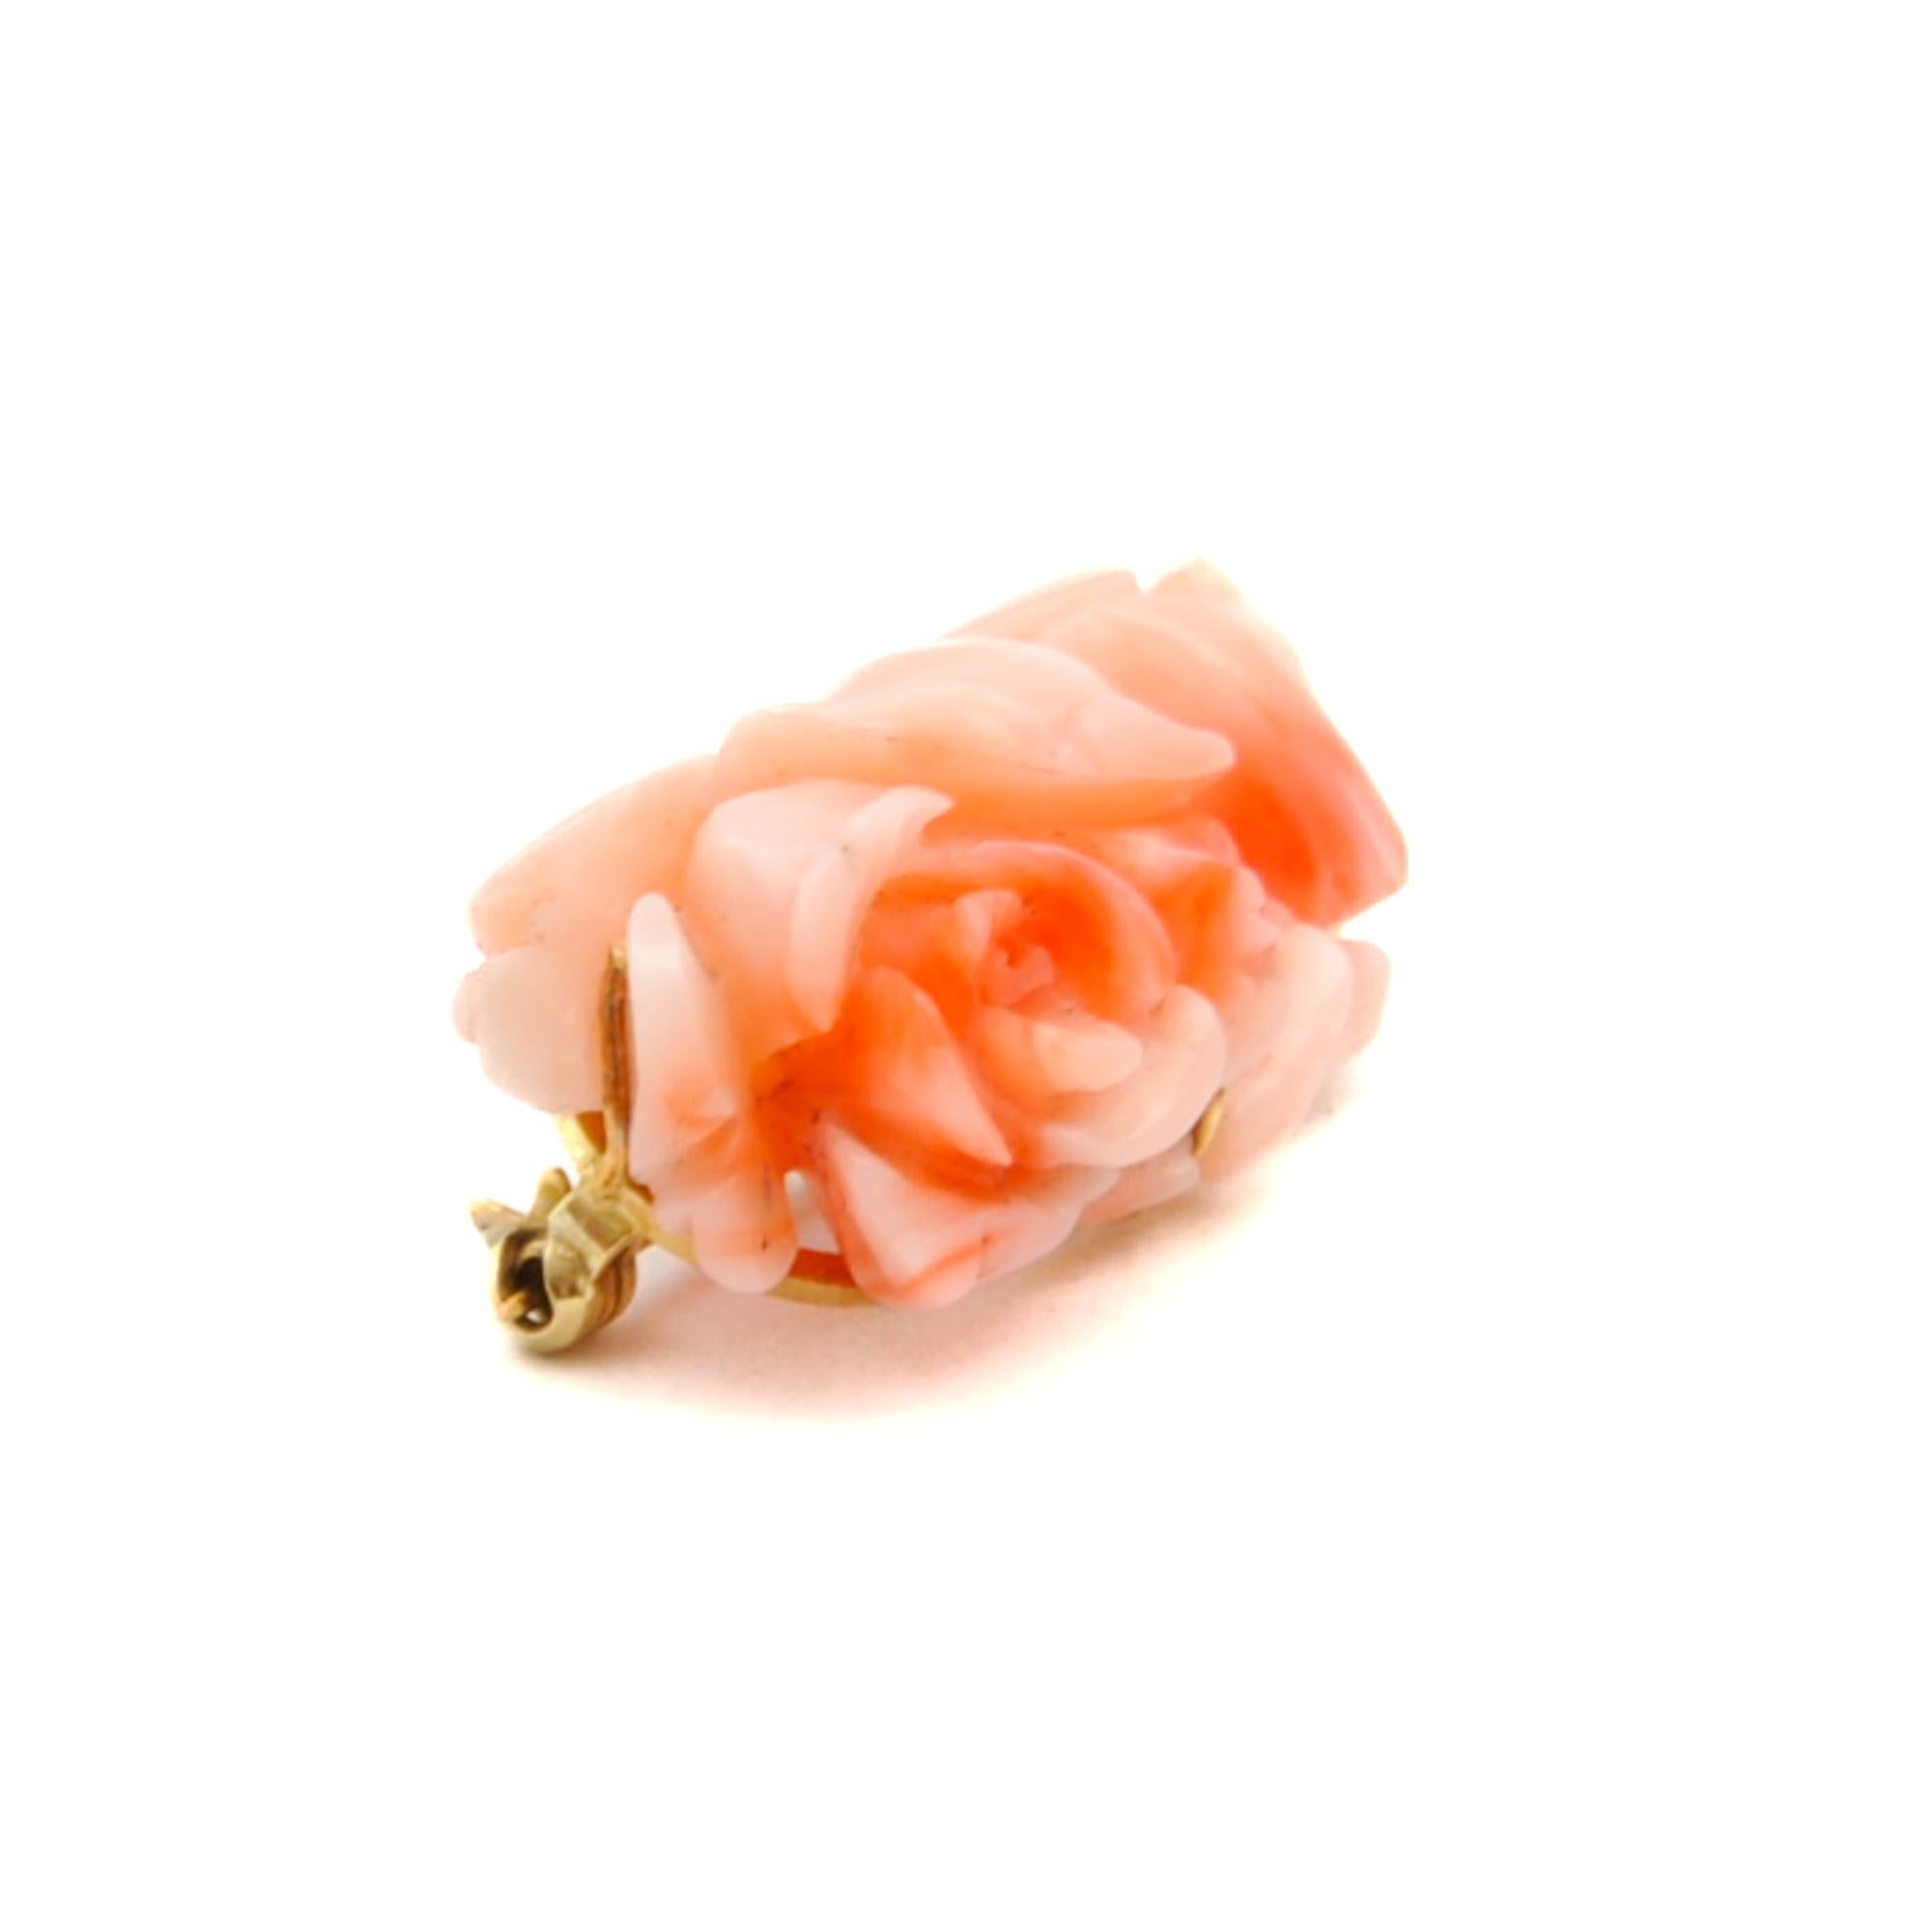 Eine rosa Korallenbrosche im Vintage-Stil in einer goldenen Fassung. Die Koralle ist zu einer schönen blühenden Rosenblüte geschnitzt und auf der Rückseite mit einem Goldrahmen versehen. Die Koralle gilt als Symbol für Erneuerung, Vitalität und